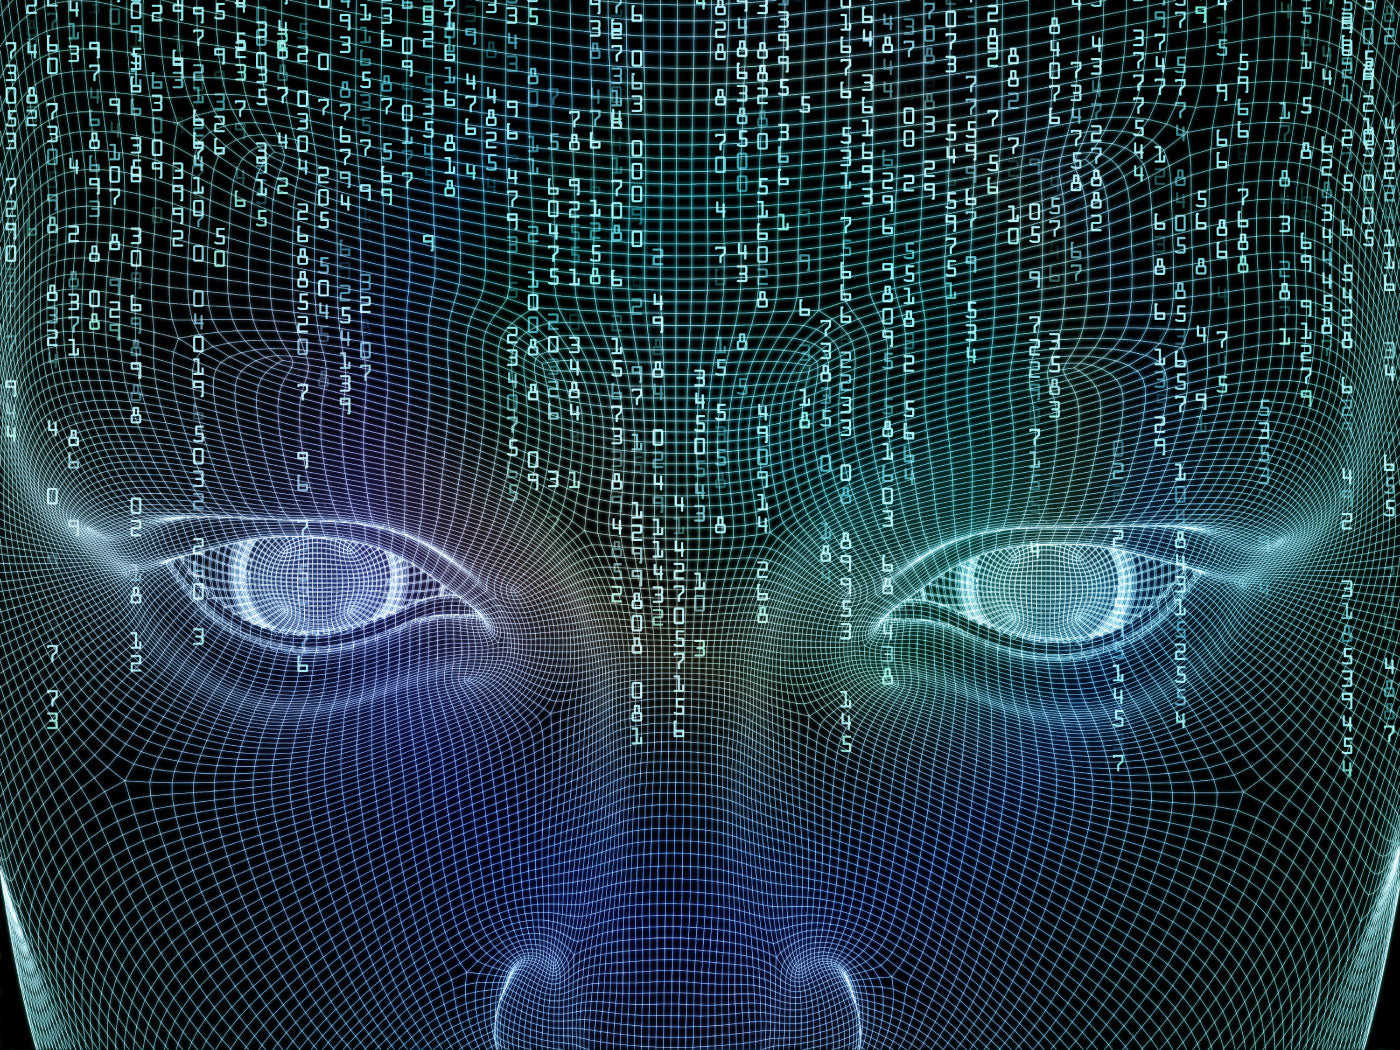 Des experts prédisent que l'Intelligence Artificielle va dominer les humains dans moins de 50 ans Blog_artificial_intelligence_benefits_risk